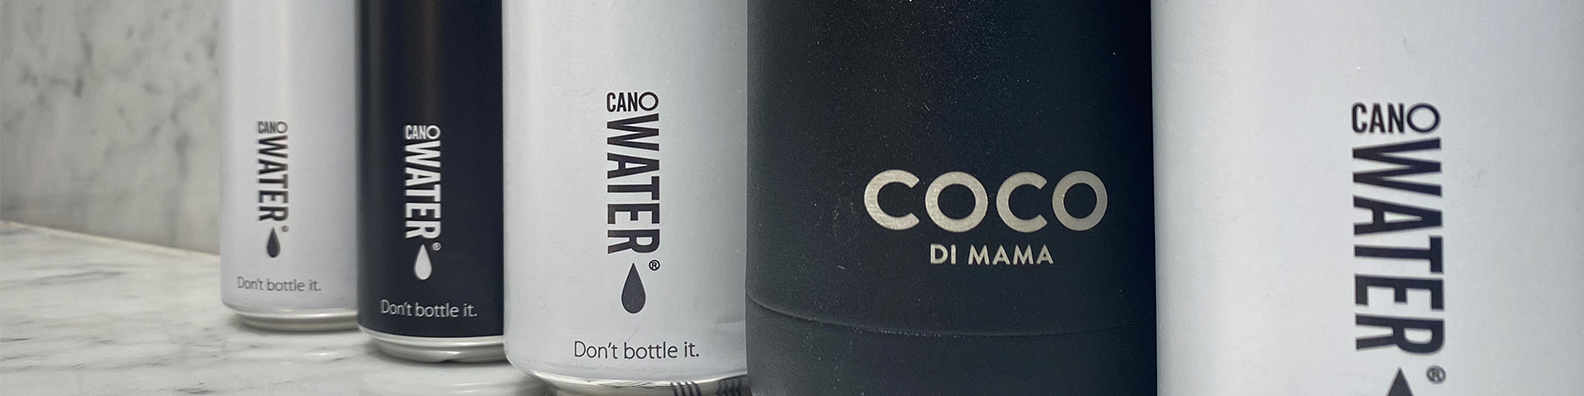 Coco di Mama Cano Water 